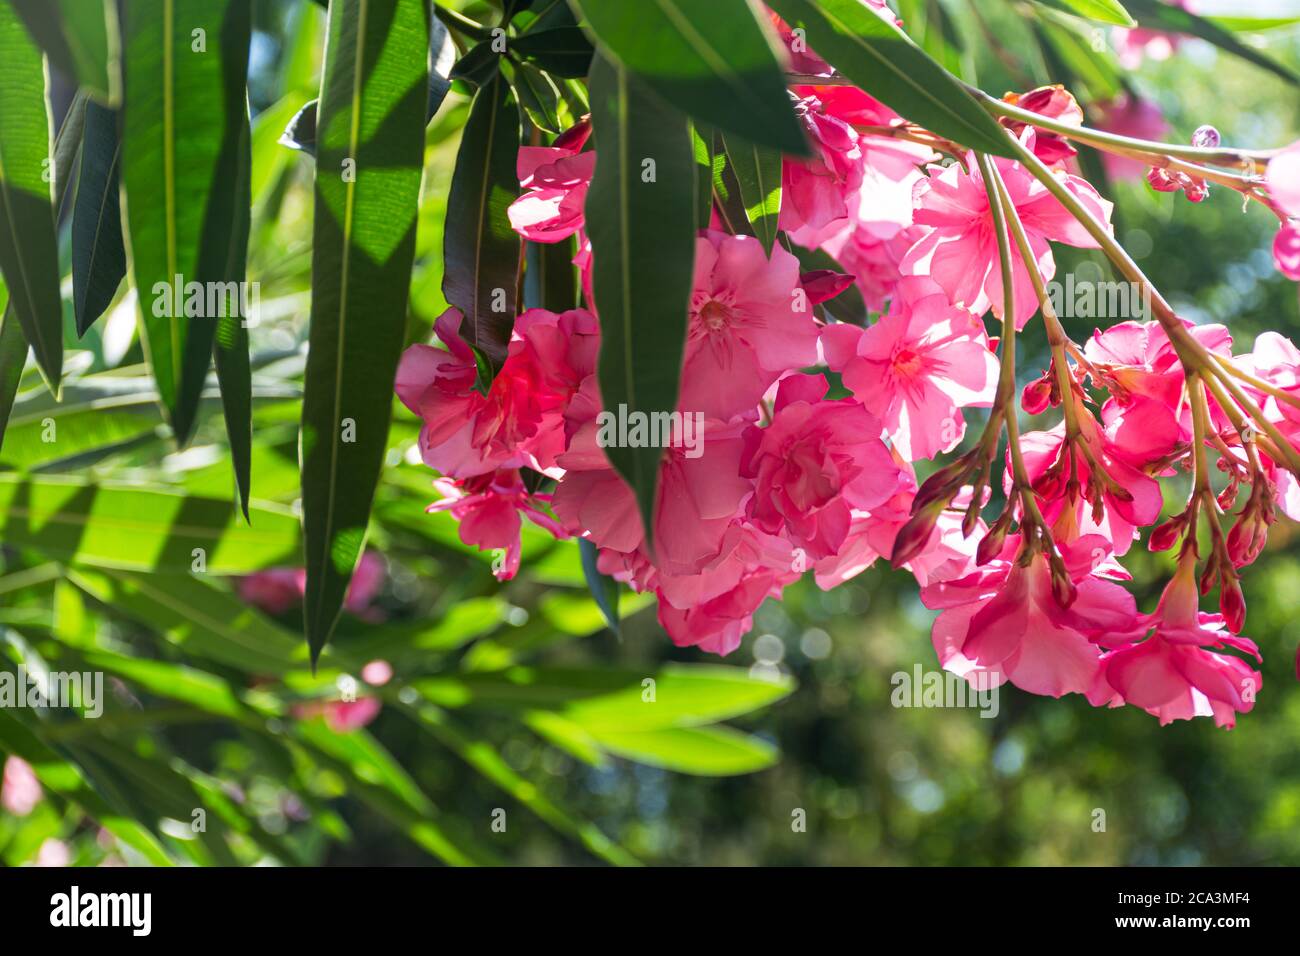 Oleander rosa lat. Nerium ist eine immergrüne Südpflanze. Rosafarbene exotische Blüten im selektiven Fokus. Schöner Hintergrund für eine Postkarte. Sommer hell f Stockfoto